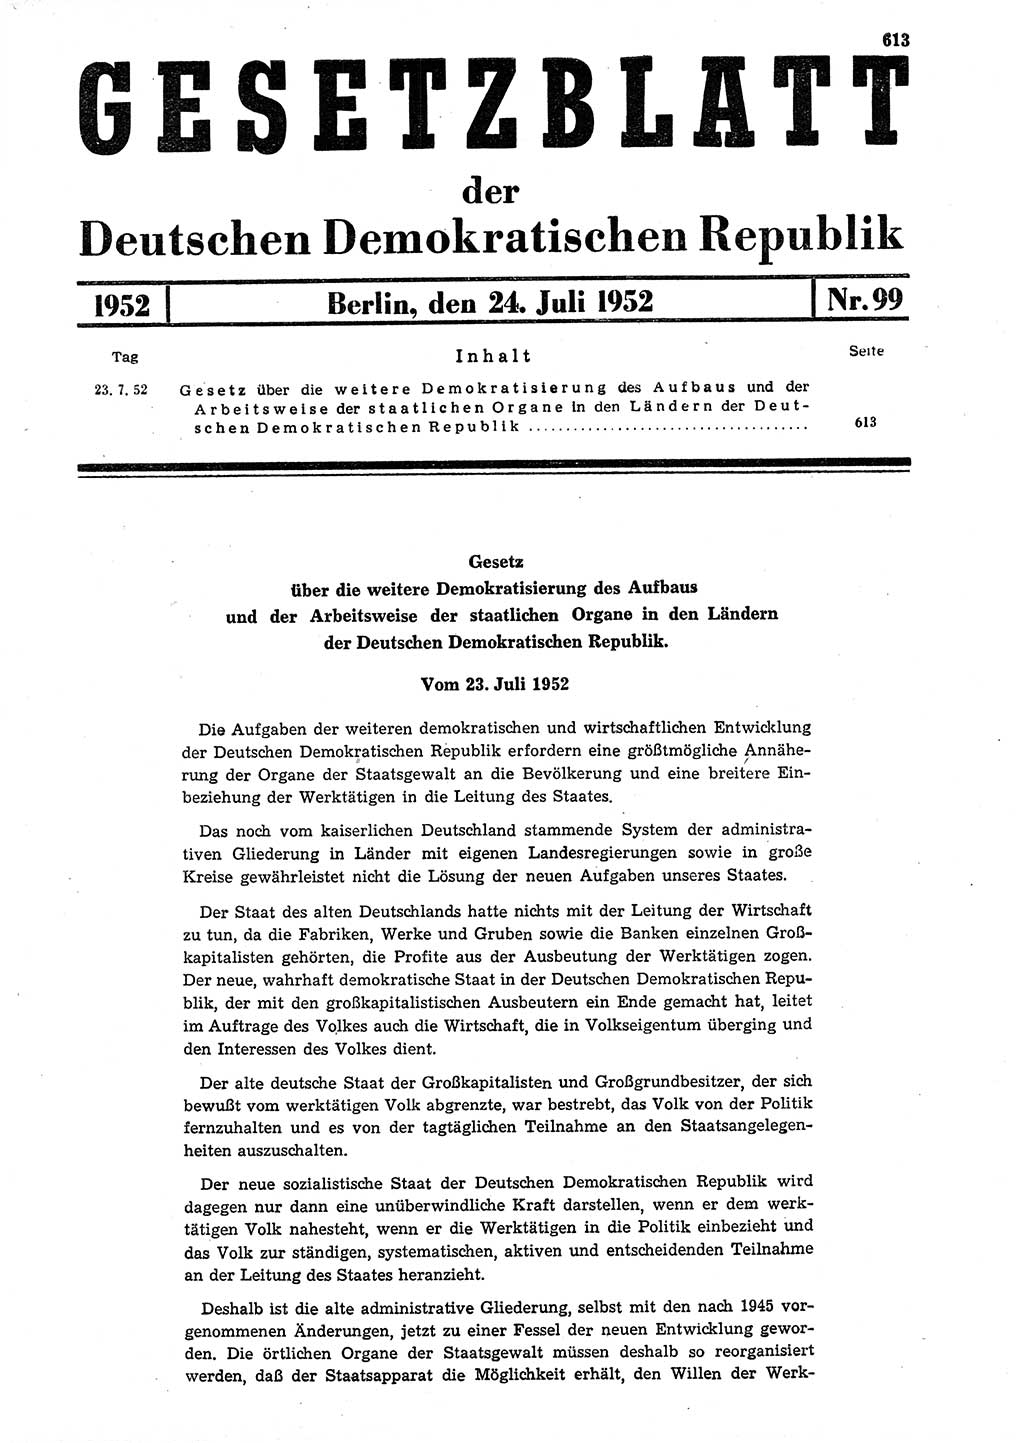 Gesetzblatt (GBl.) der Deutschen Demokratischen Republik (DDR) 1952, Seite 613 (GBl. DDR 1952, S. 613)